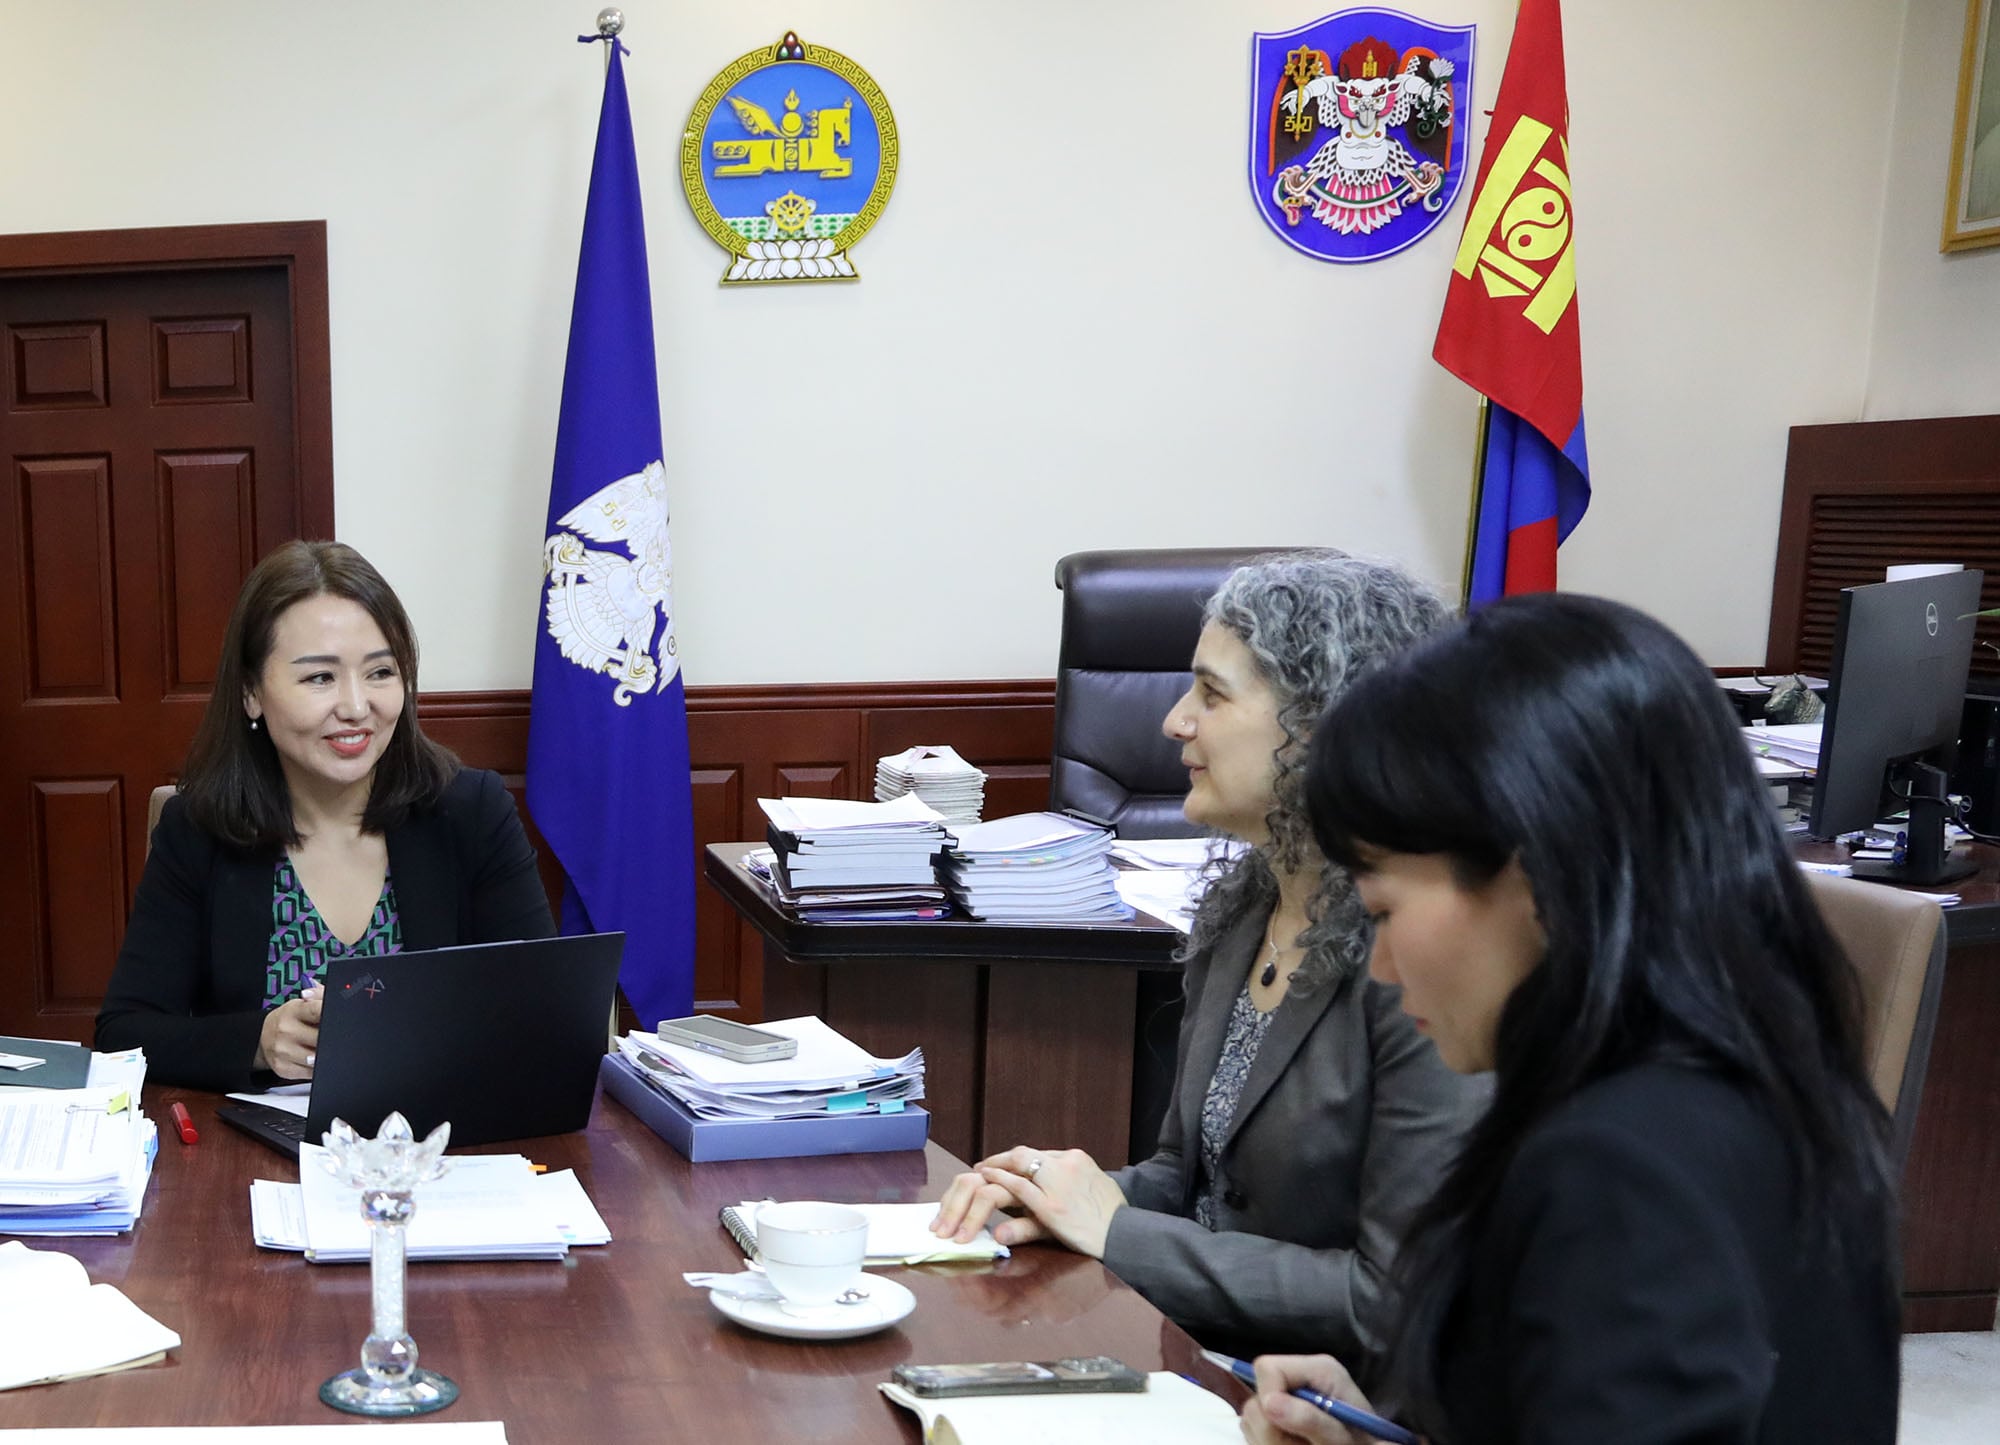 Азийн сангийн Монгол дахь суурин төлөөлөгч Сара Тэйлорийг хүлээн авч уулзав